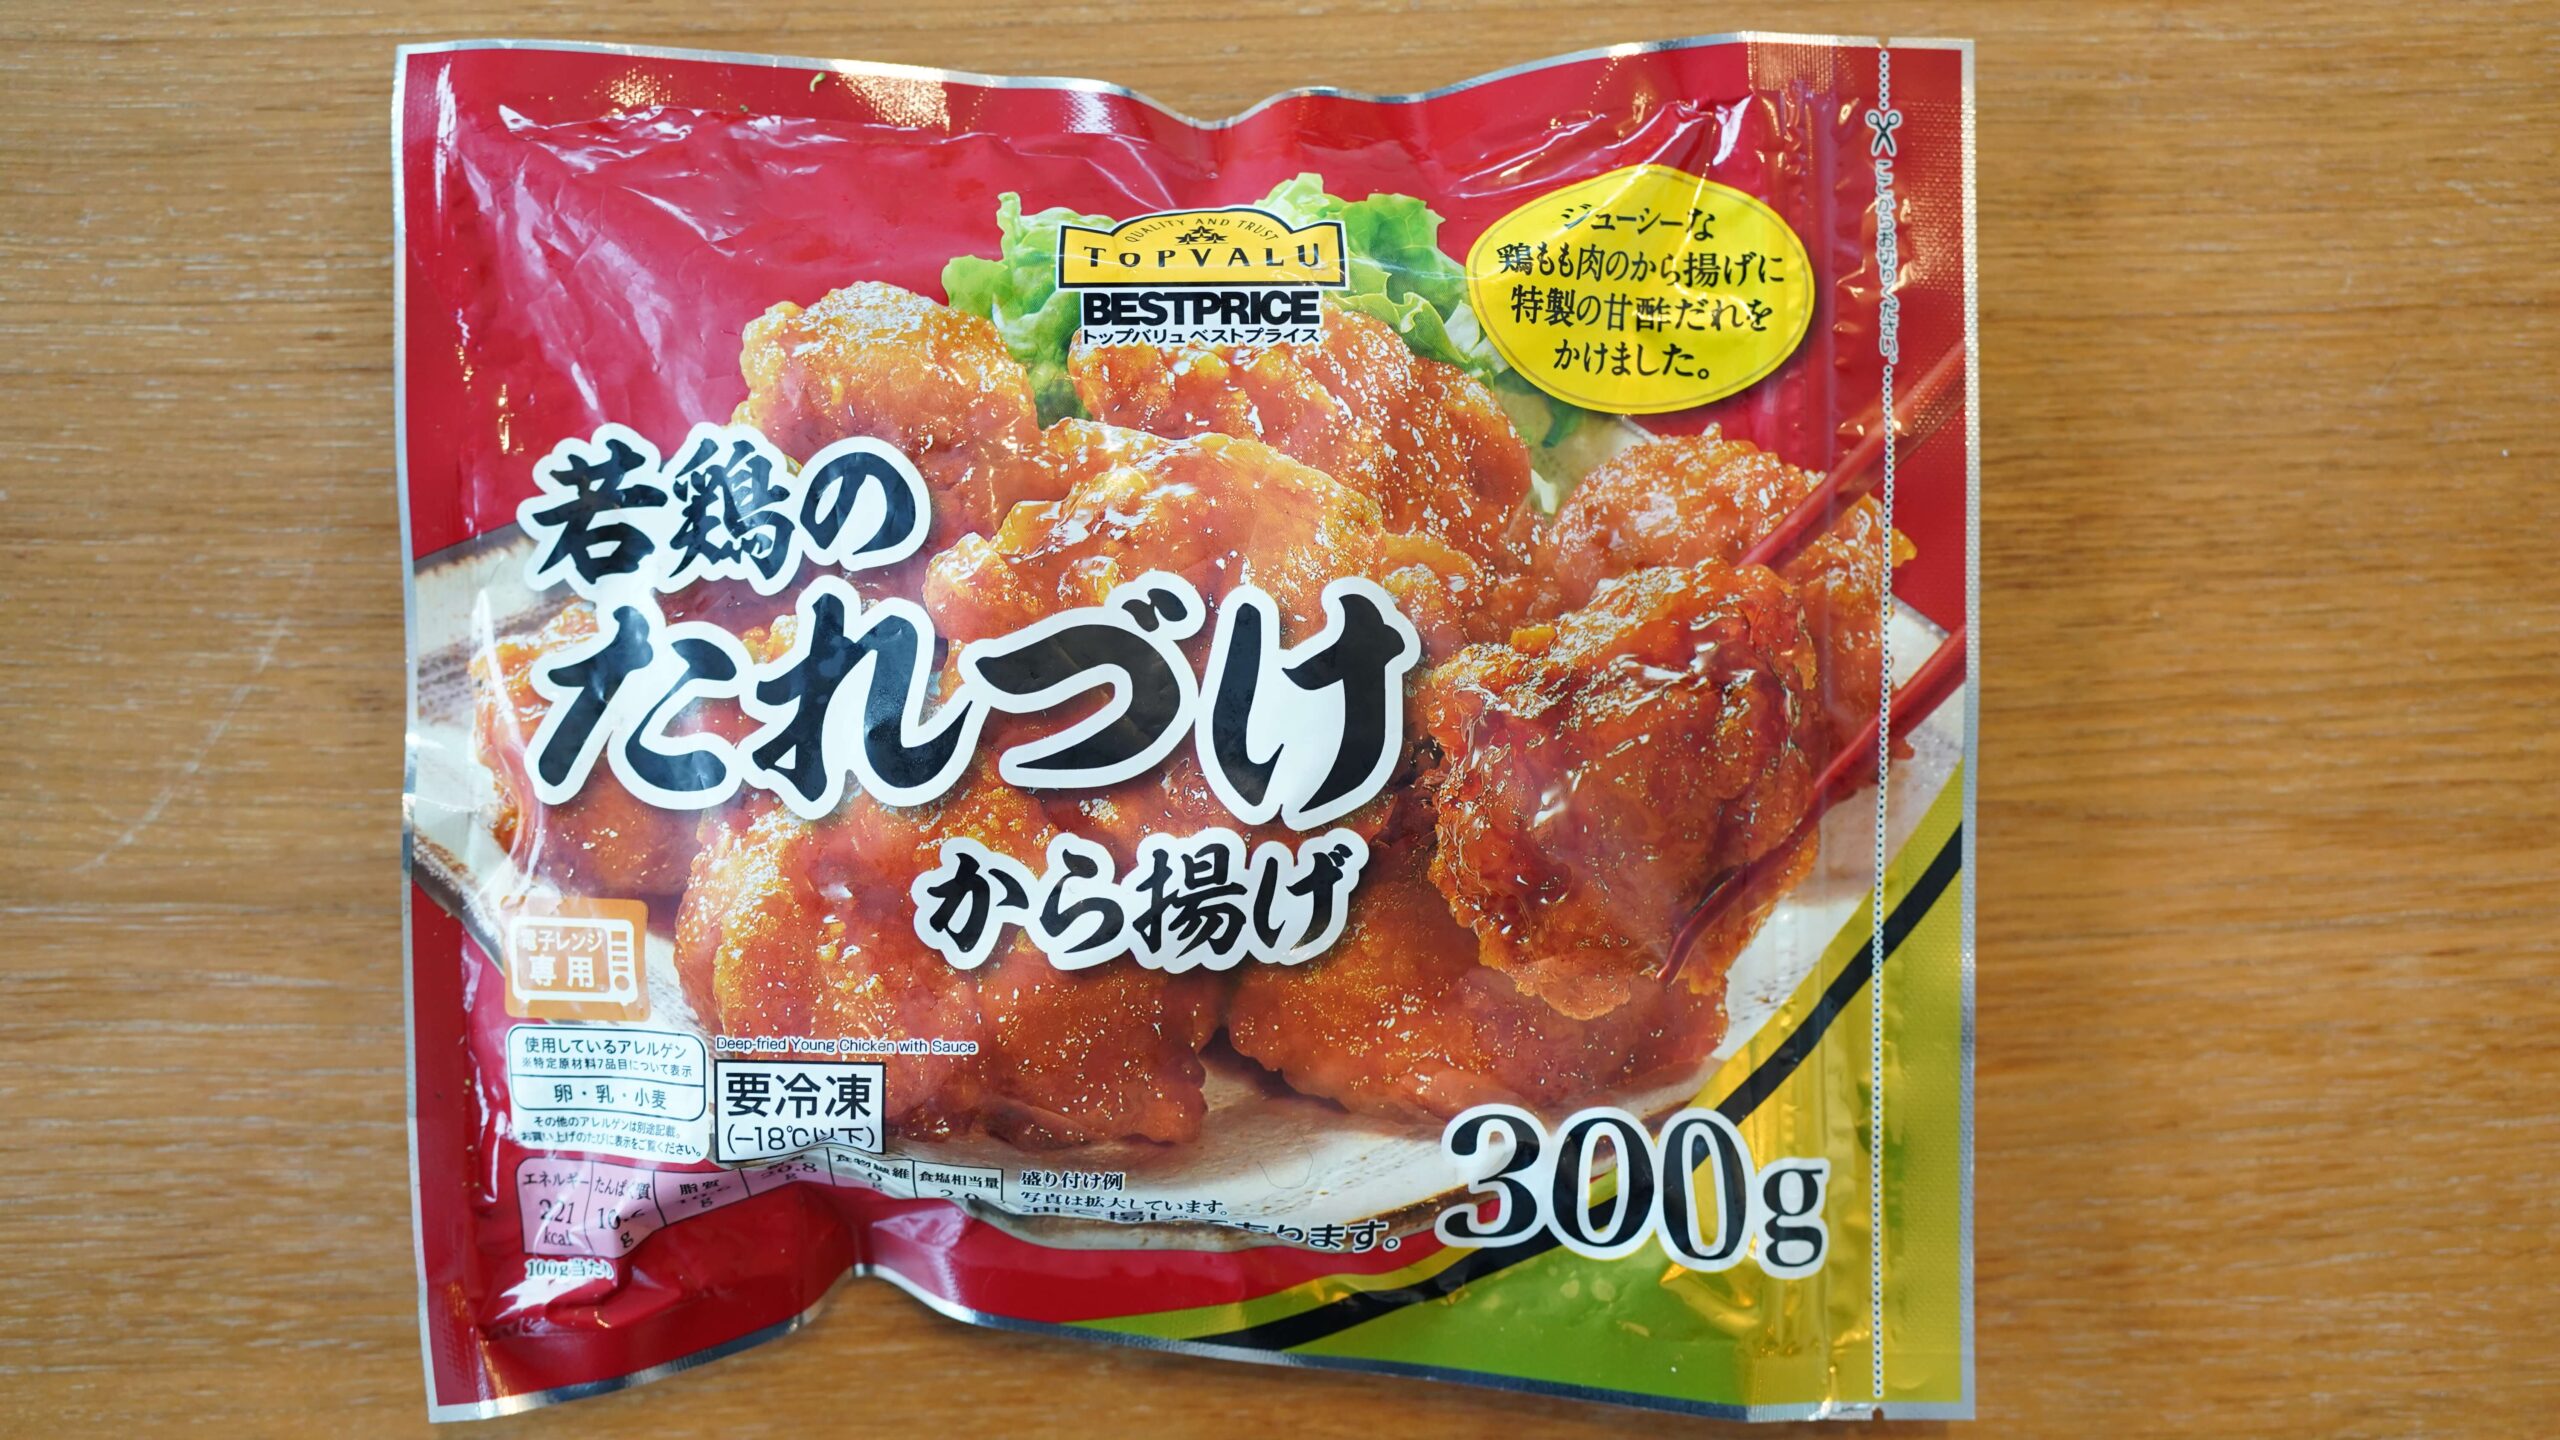 イオン・トップバリュおすすめ冷凍食品「若鶏のたれづけ唐揚げ」のパッケージ写真